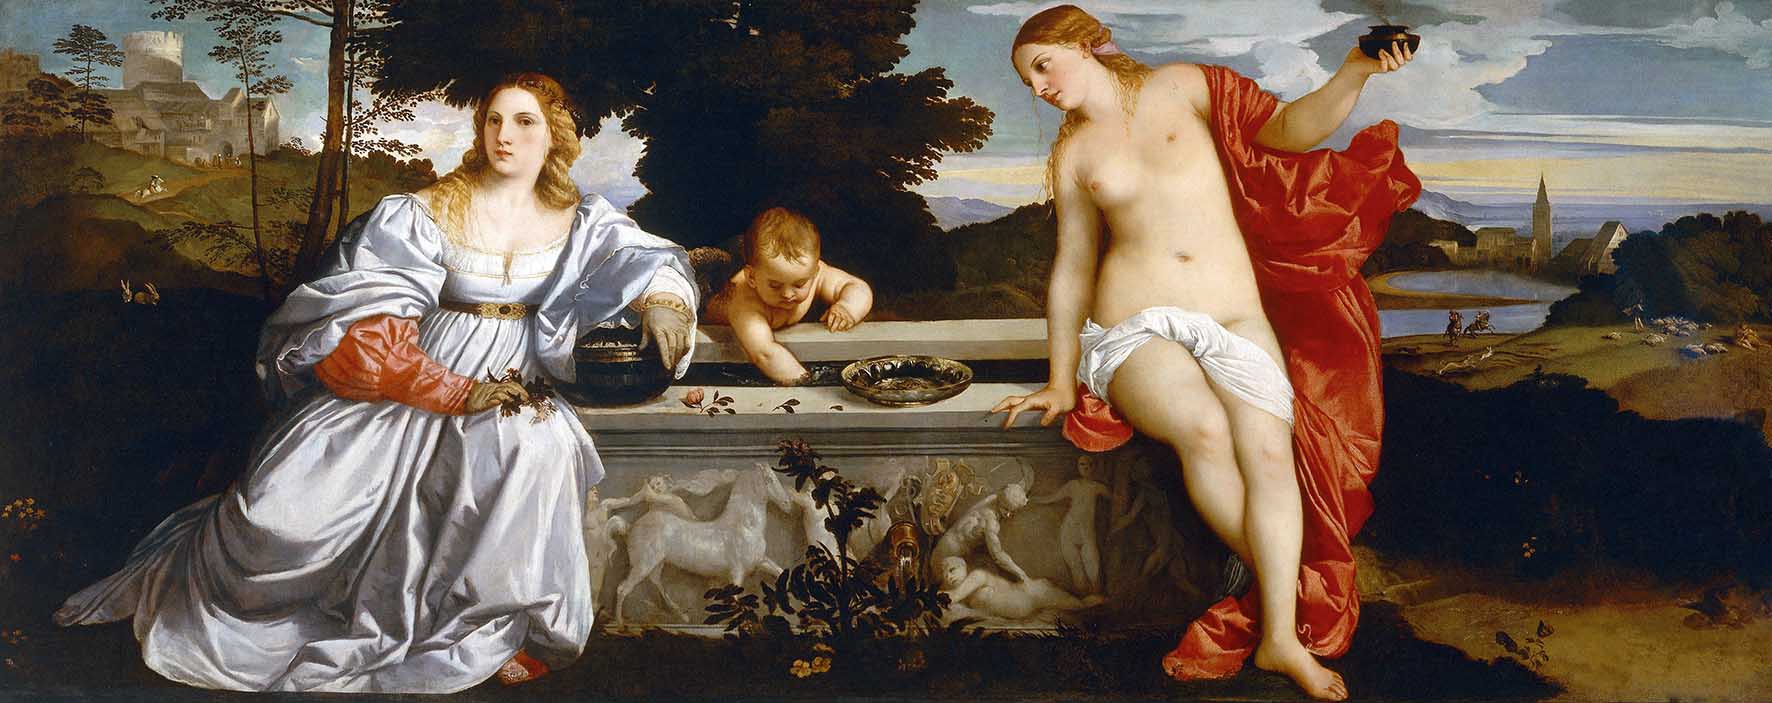 Tiziano Vecellio Amor Sacro e Amor Profano Gallería Borghese Roma 1514